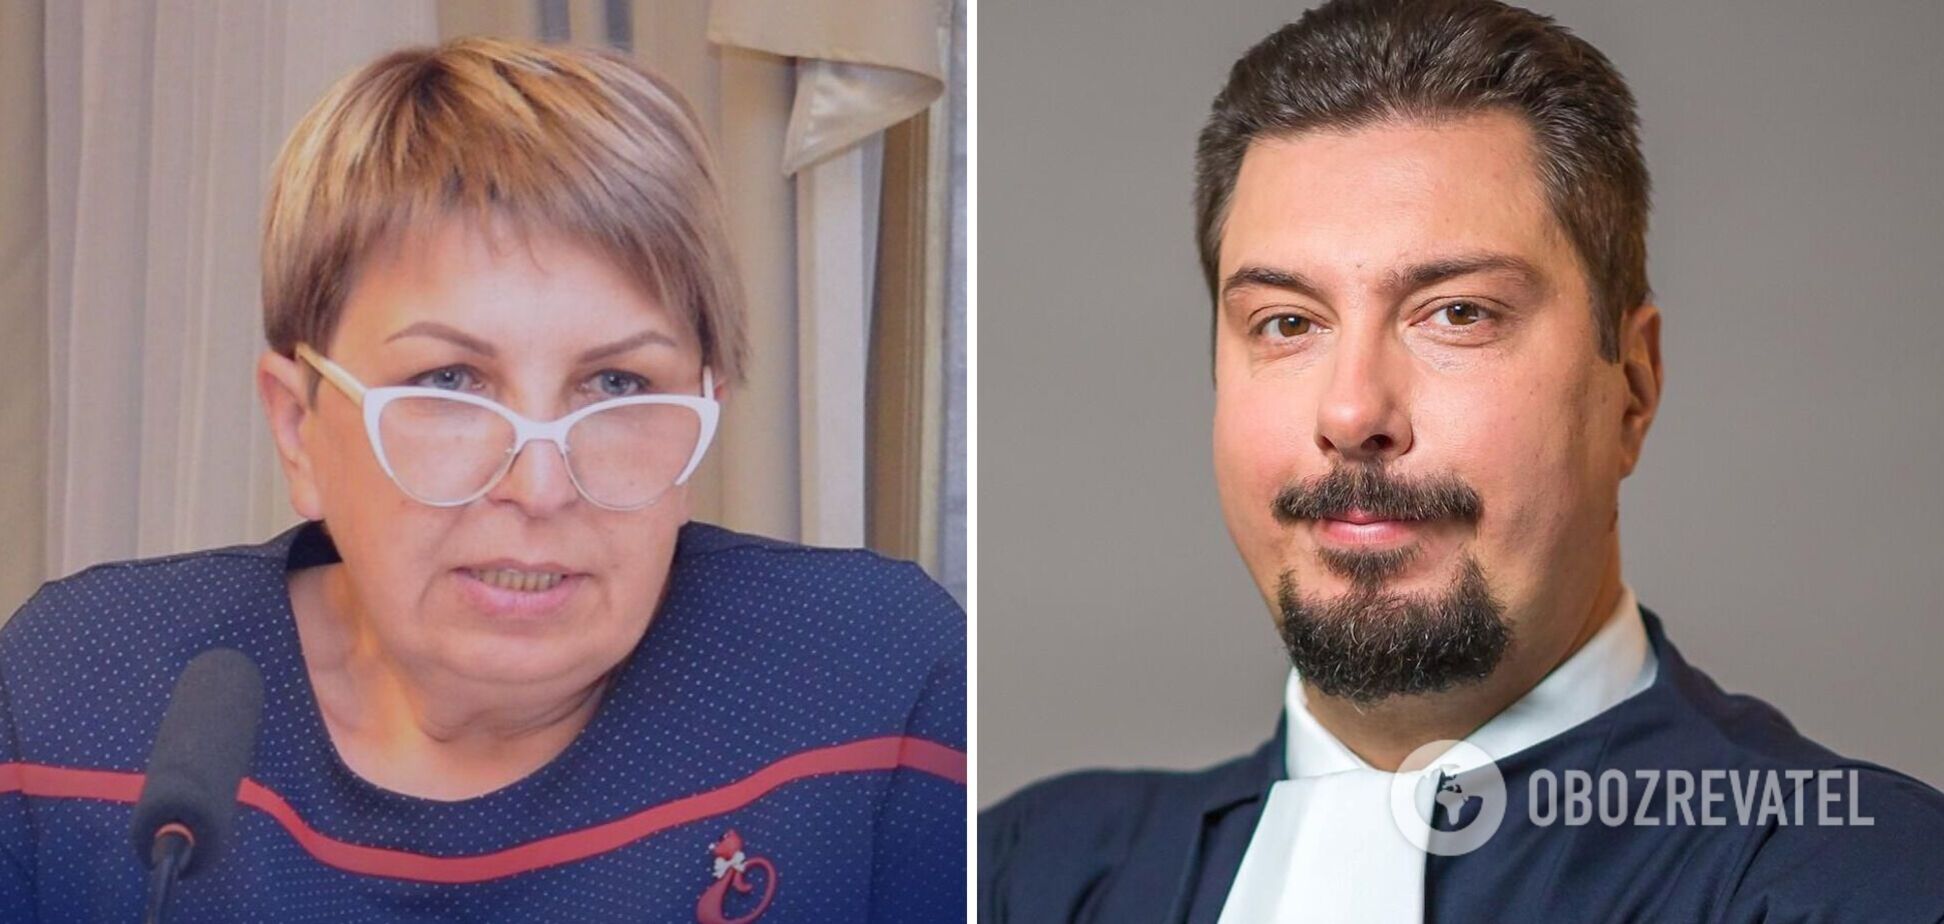 У судьи Верховного суда Елениной нашли $50 тыс., которые передавались Князеву как взятка во время спецоперации – СМИ